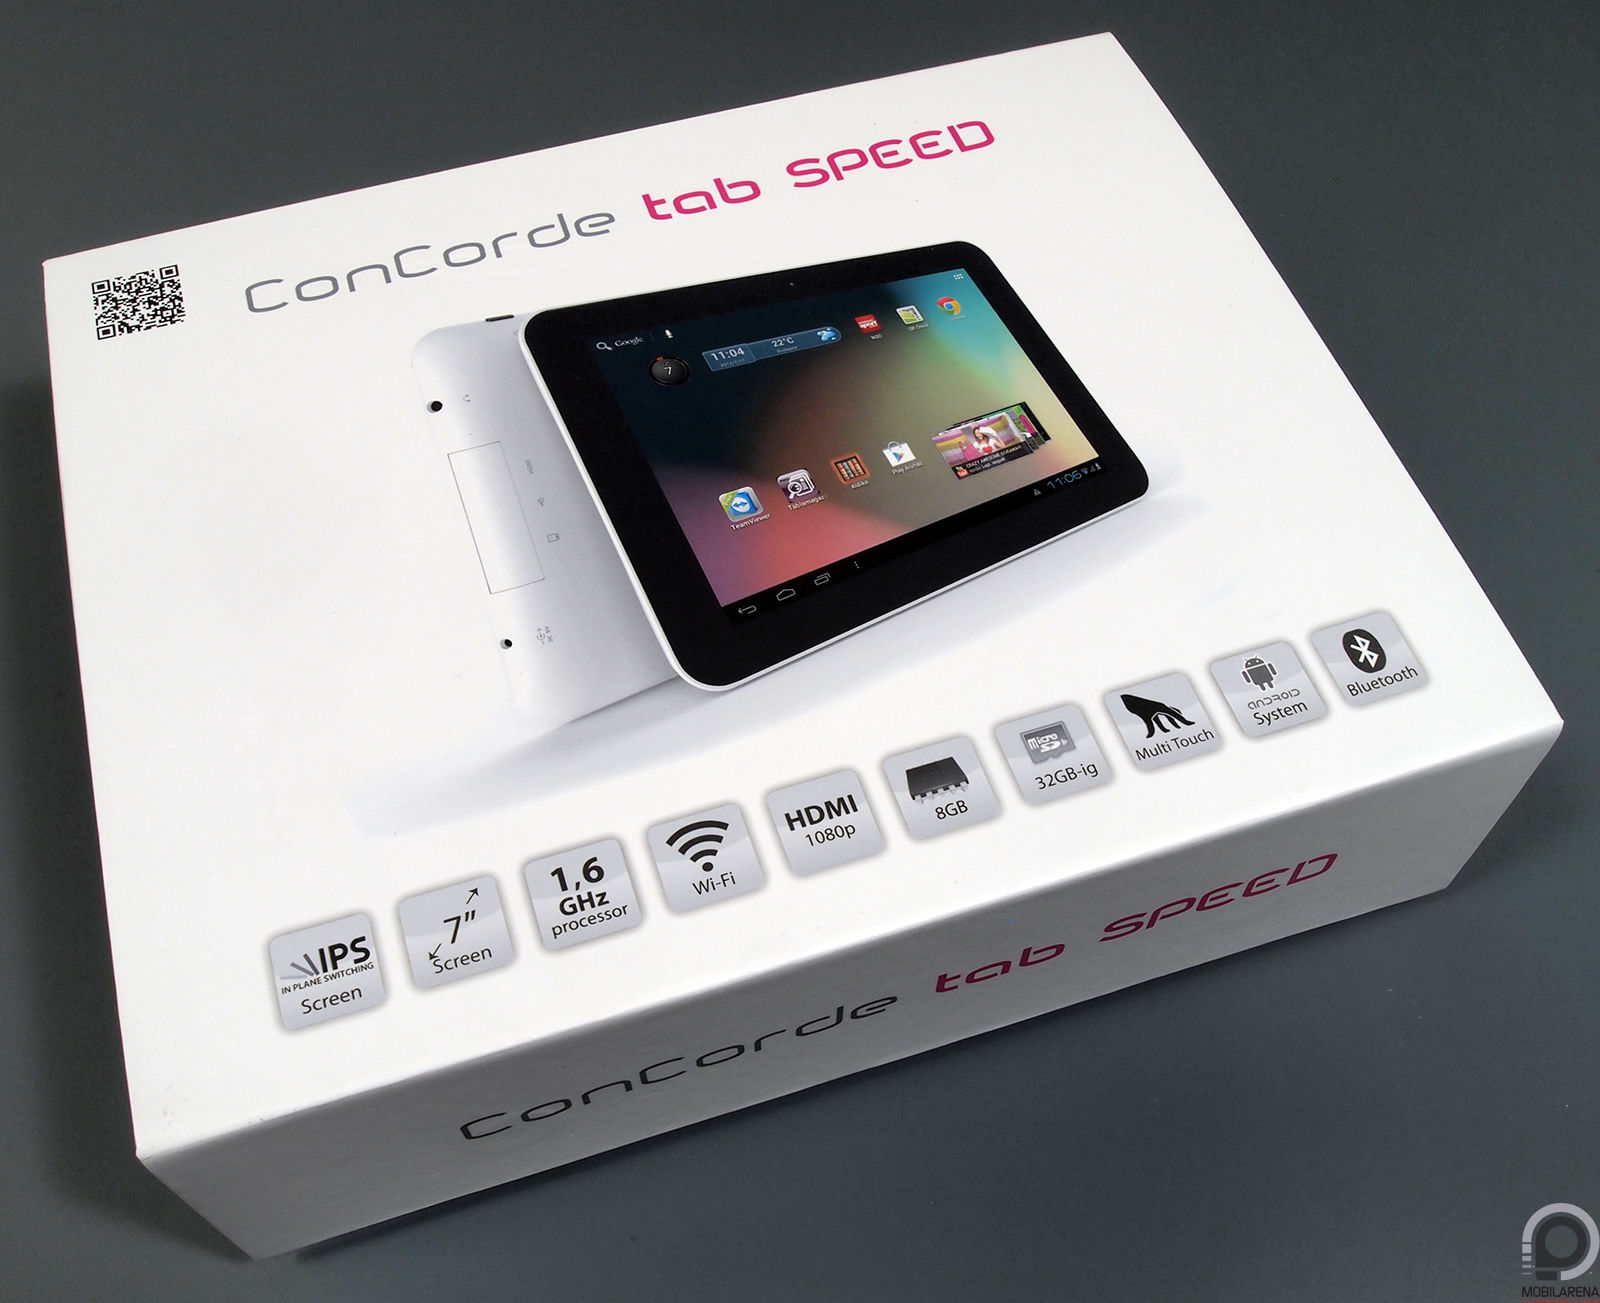 ConCorde Tab SPEED - a cél szentesíti az eszközt - Mobilarena Tablet teszt